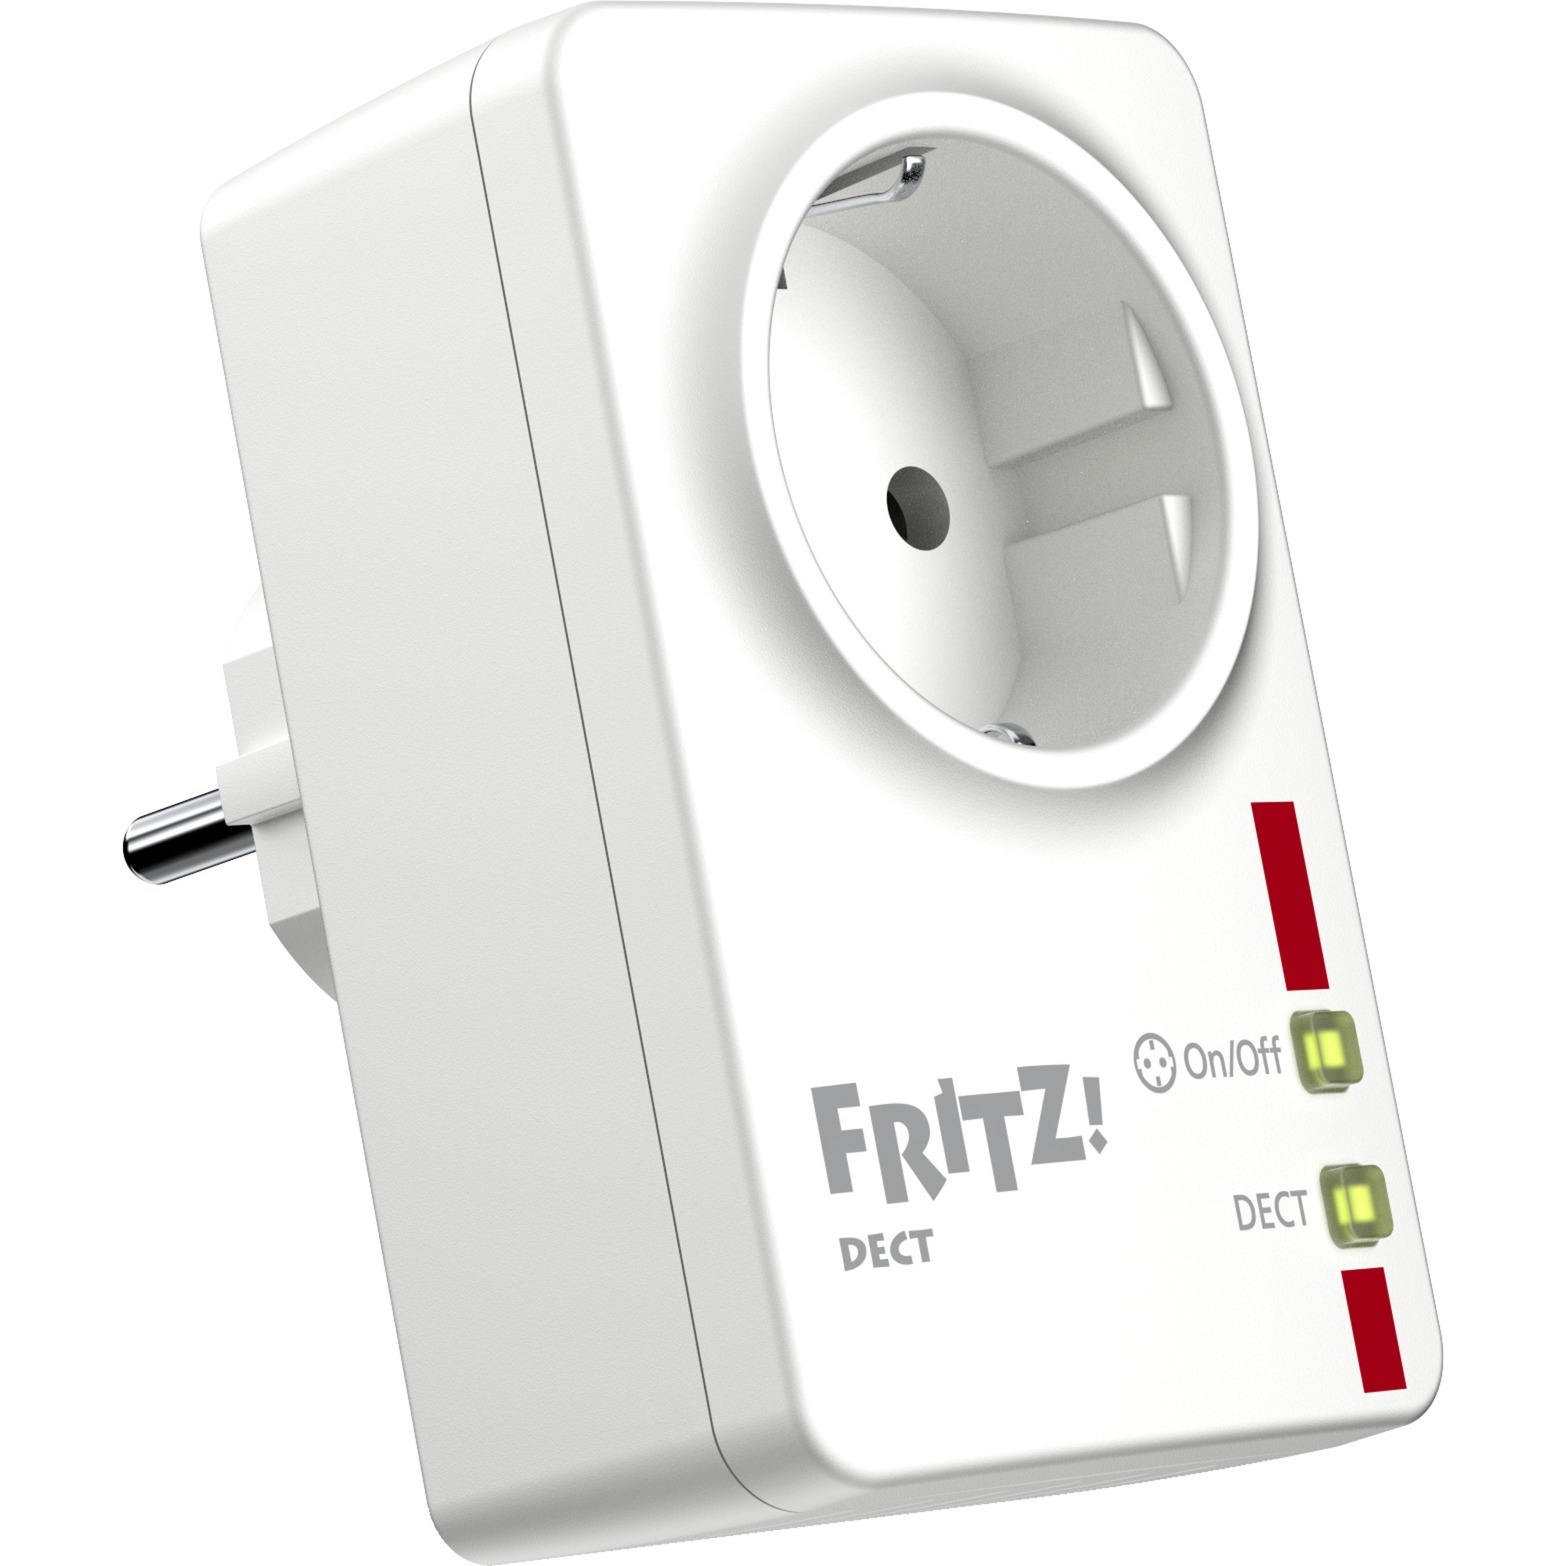 Image of Alternate - FRITZ!DECT 200 SmartHome, Steckdose online einkaufen bei Alternate